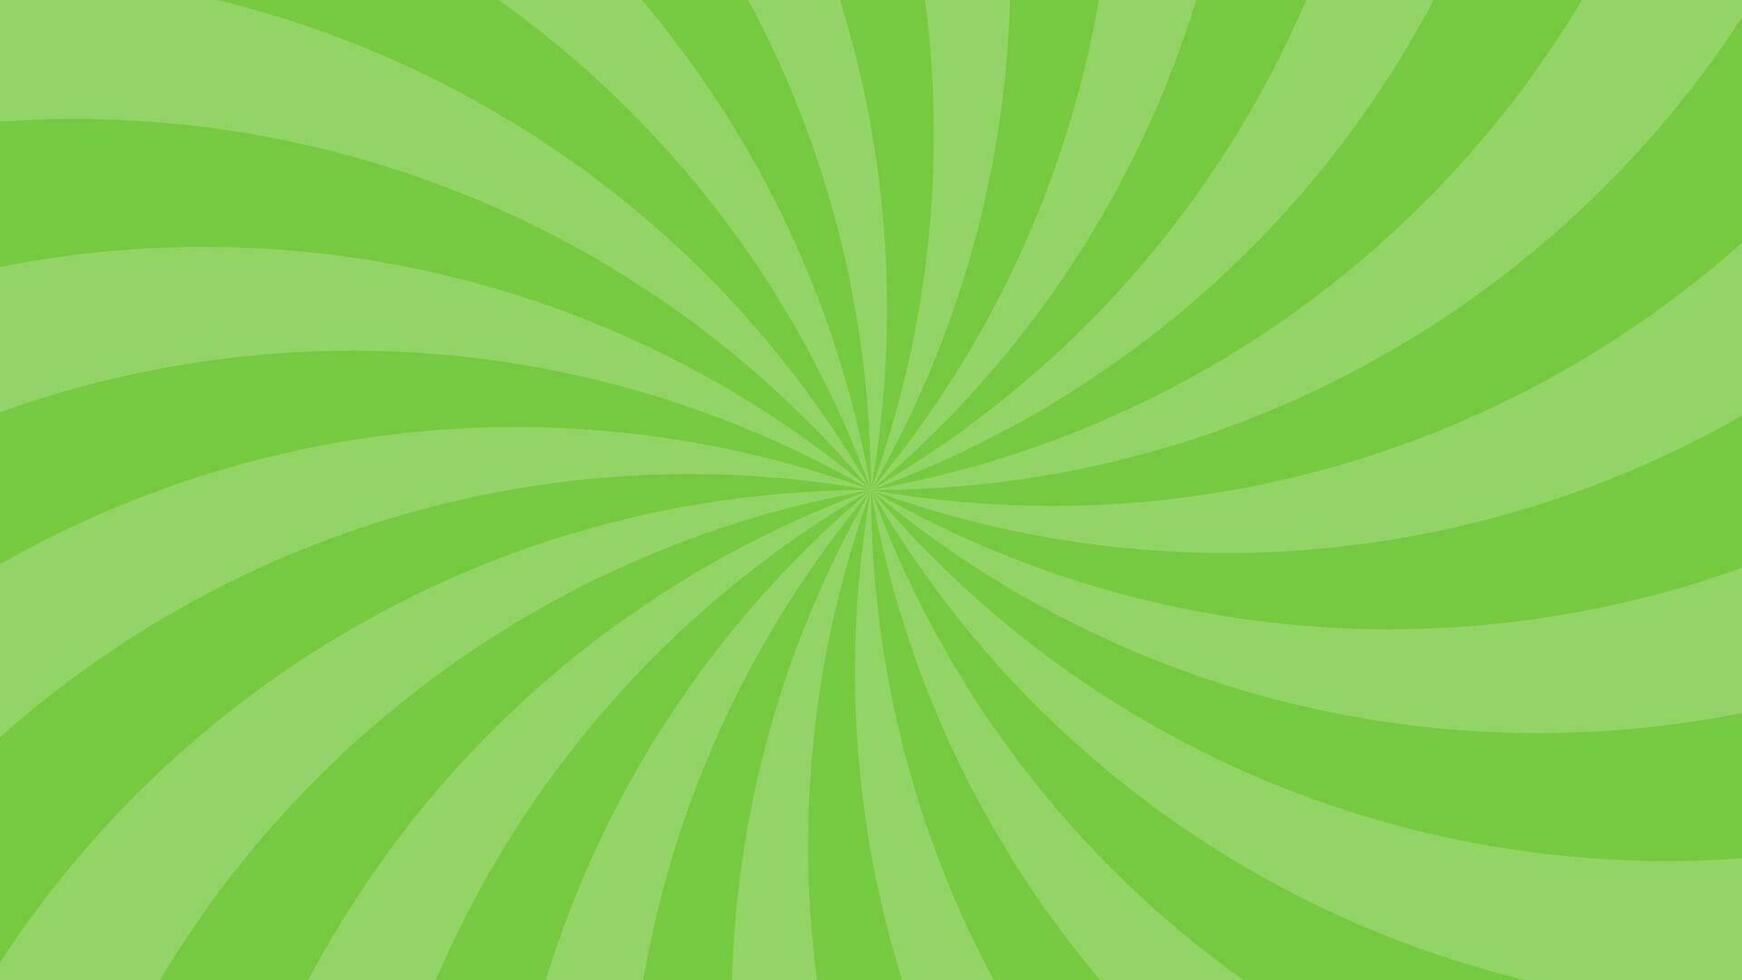 sencillo ligero verde curvo radial líneas efecto vector antecedentes